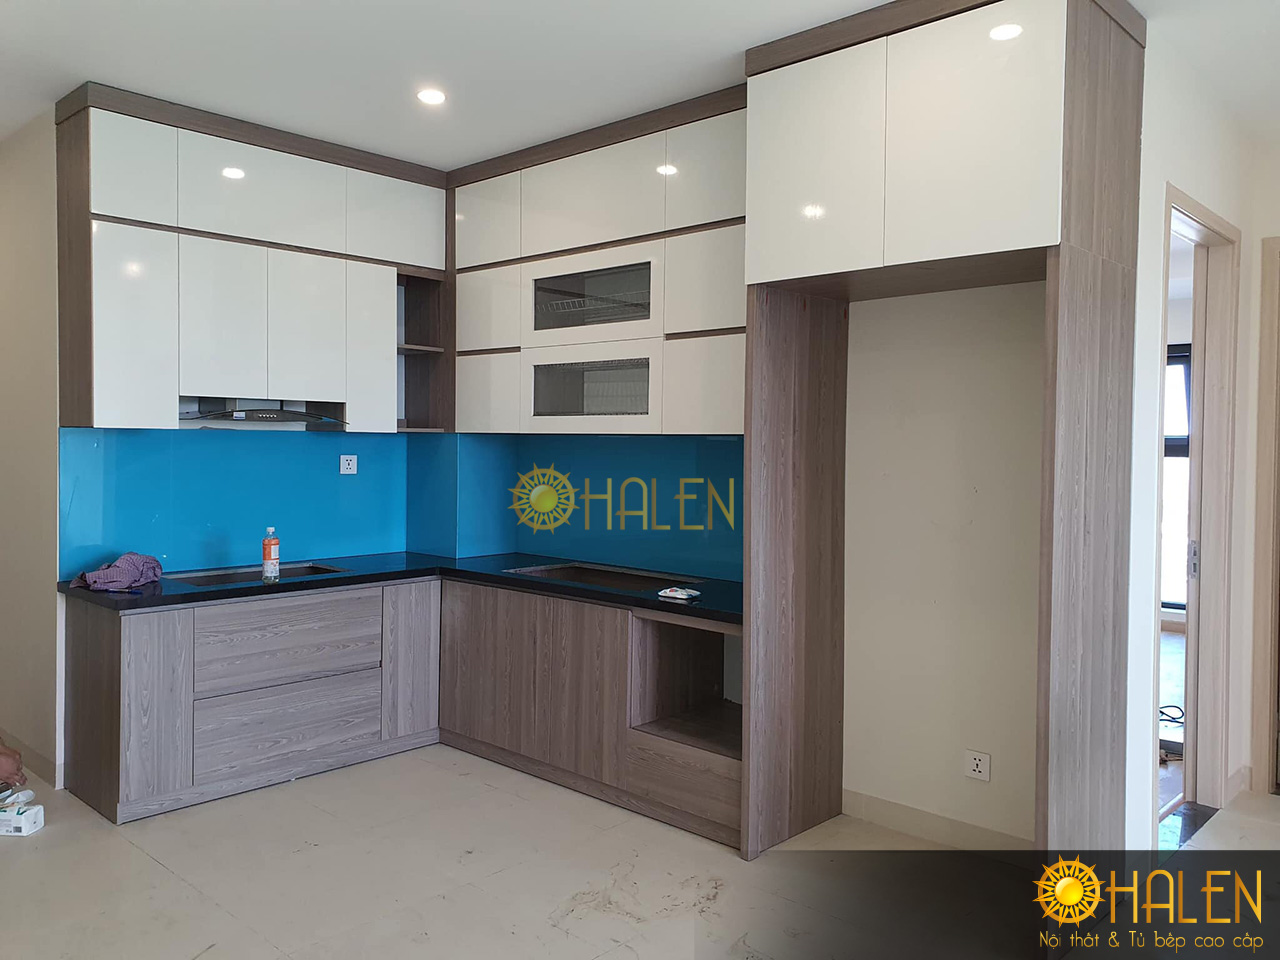 Bộ tủ bếp đã hoàn thiện để kịp bàn giao cho gia chủ - nội thất và tủ bếp OHALEN